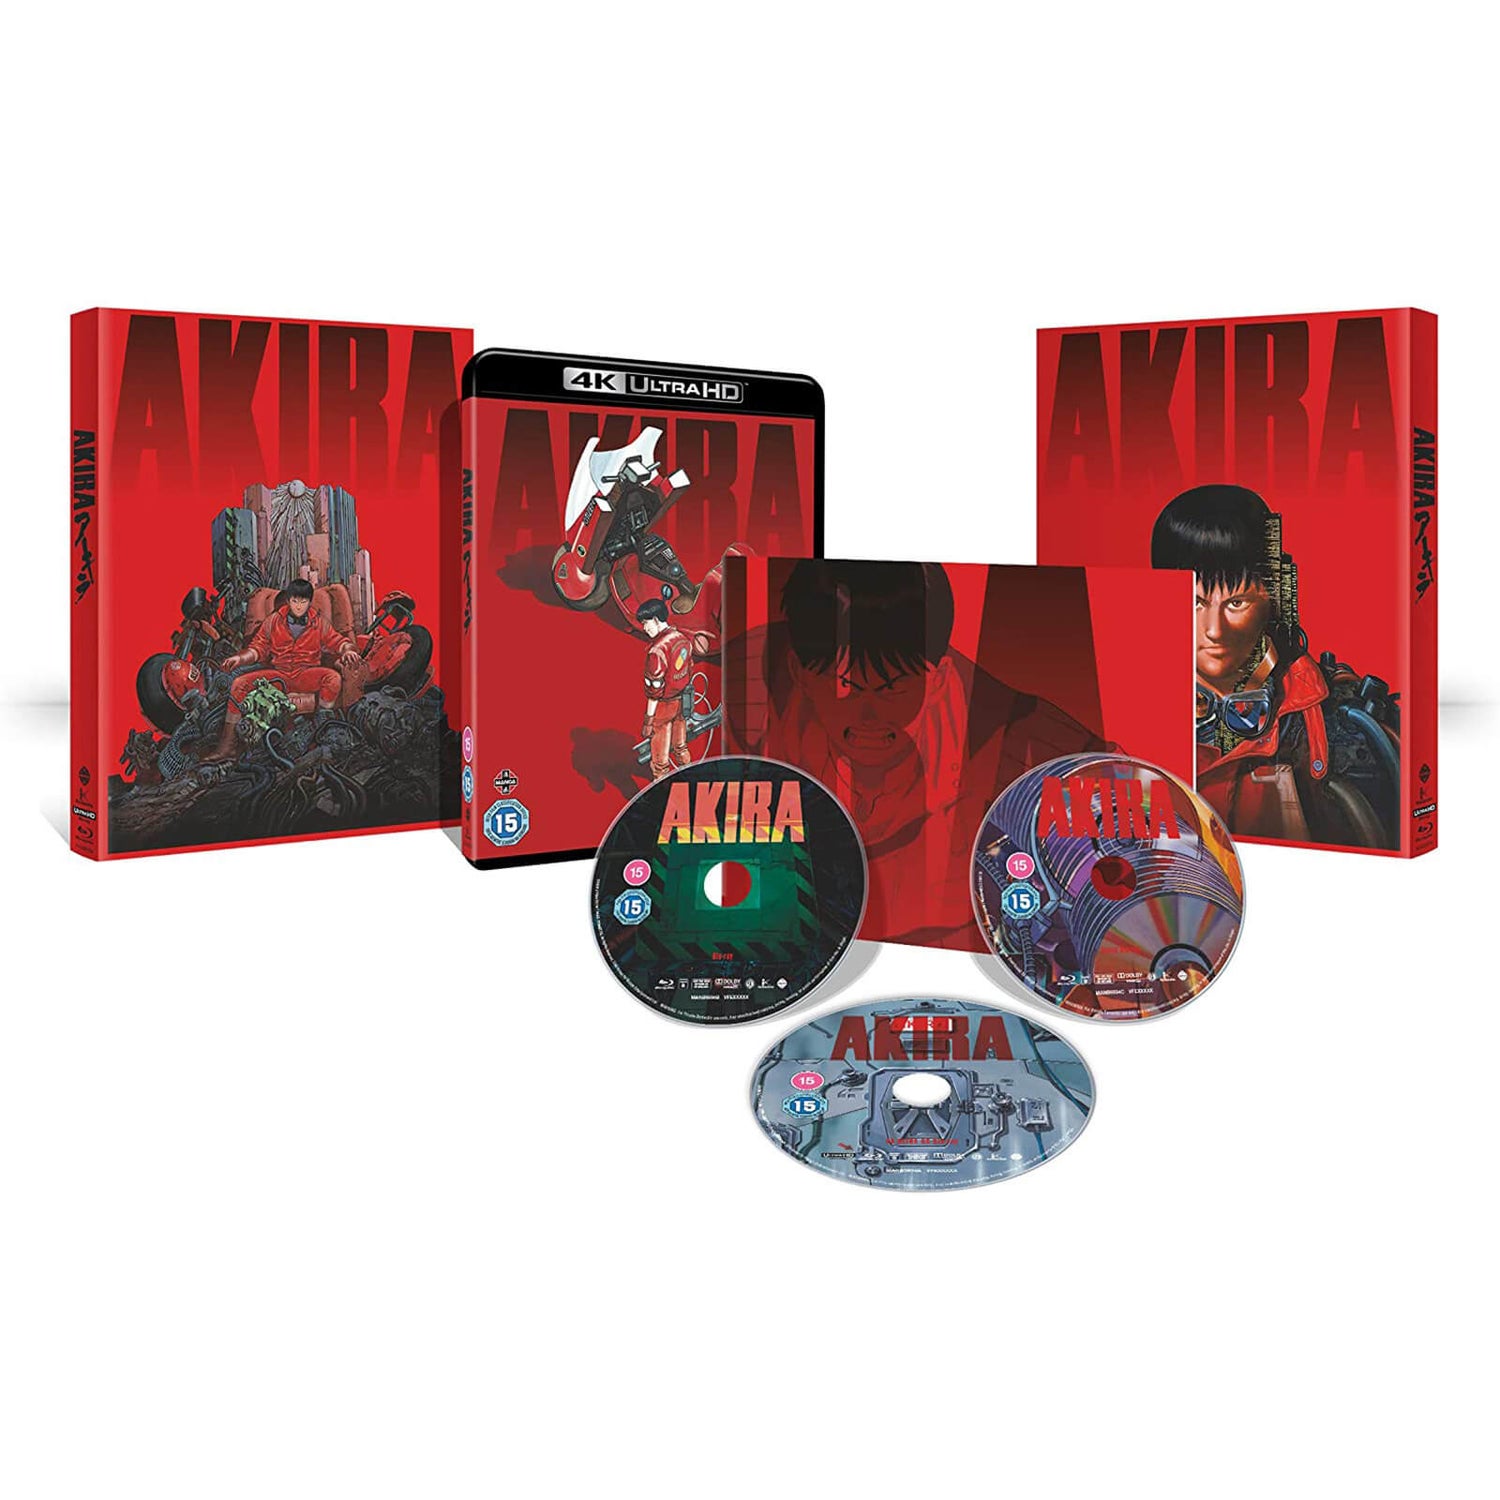 AKIRA Limited Edition 4K Ultra HD (Includes 2D Blu-ray) 4K Zavvi UK